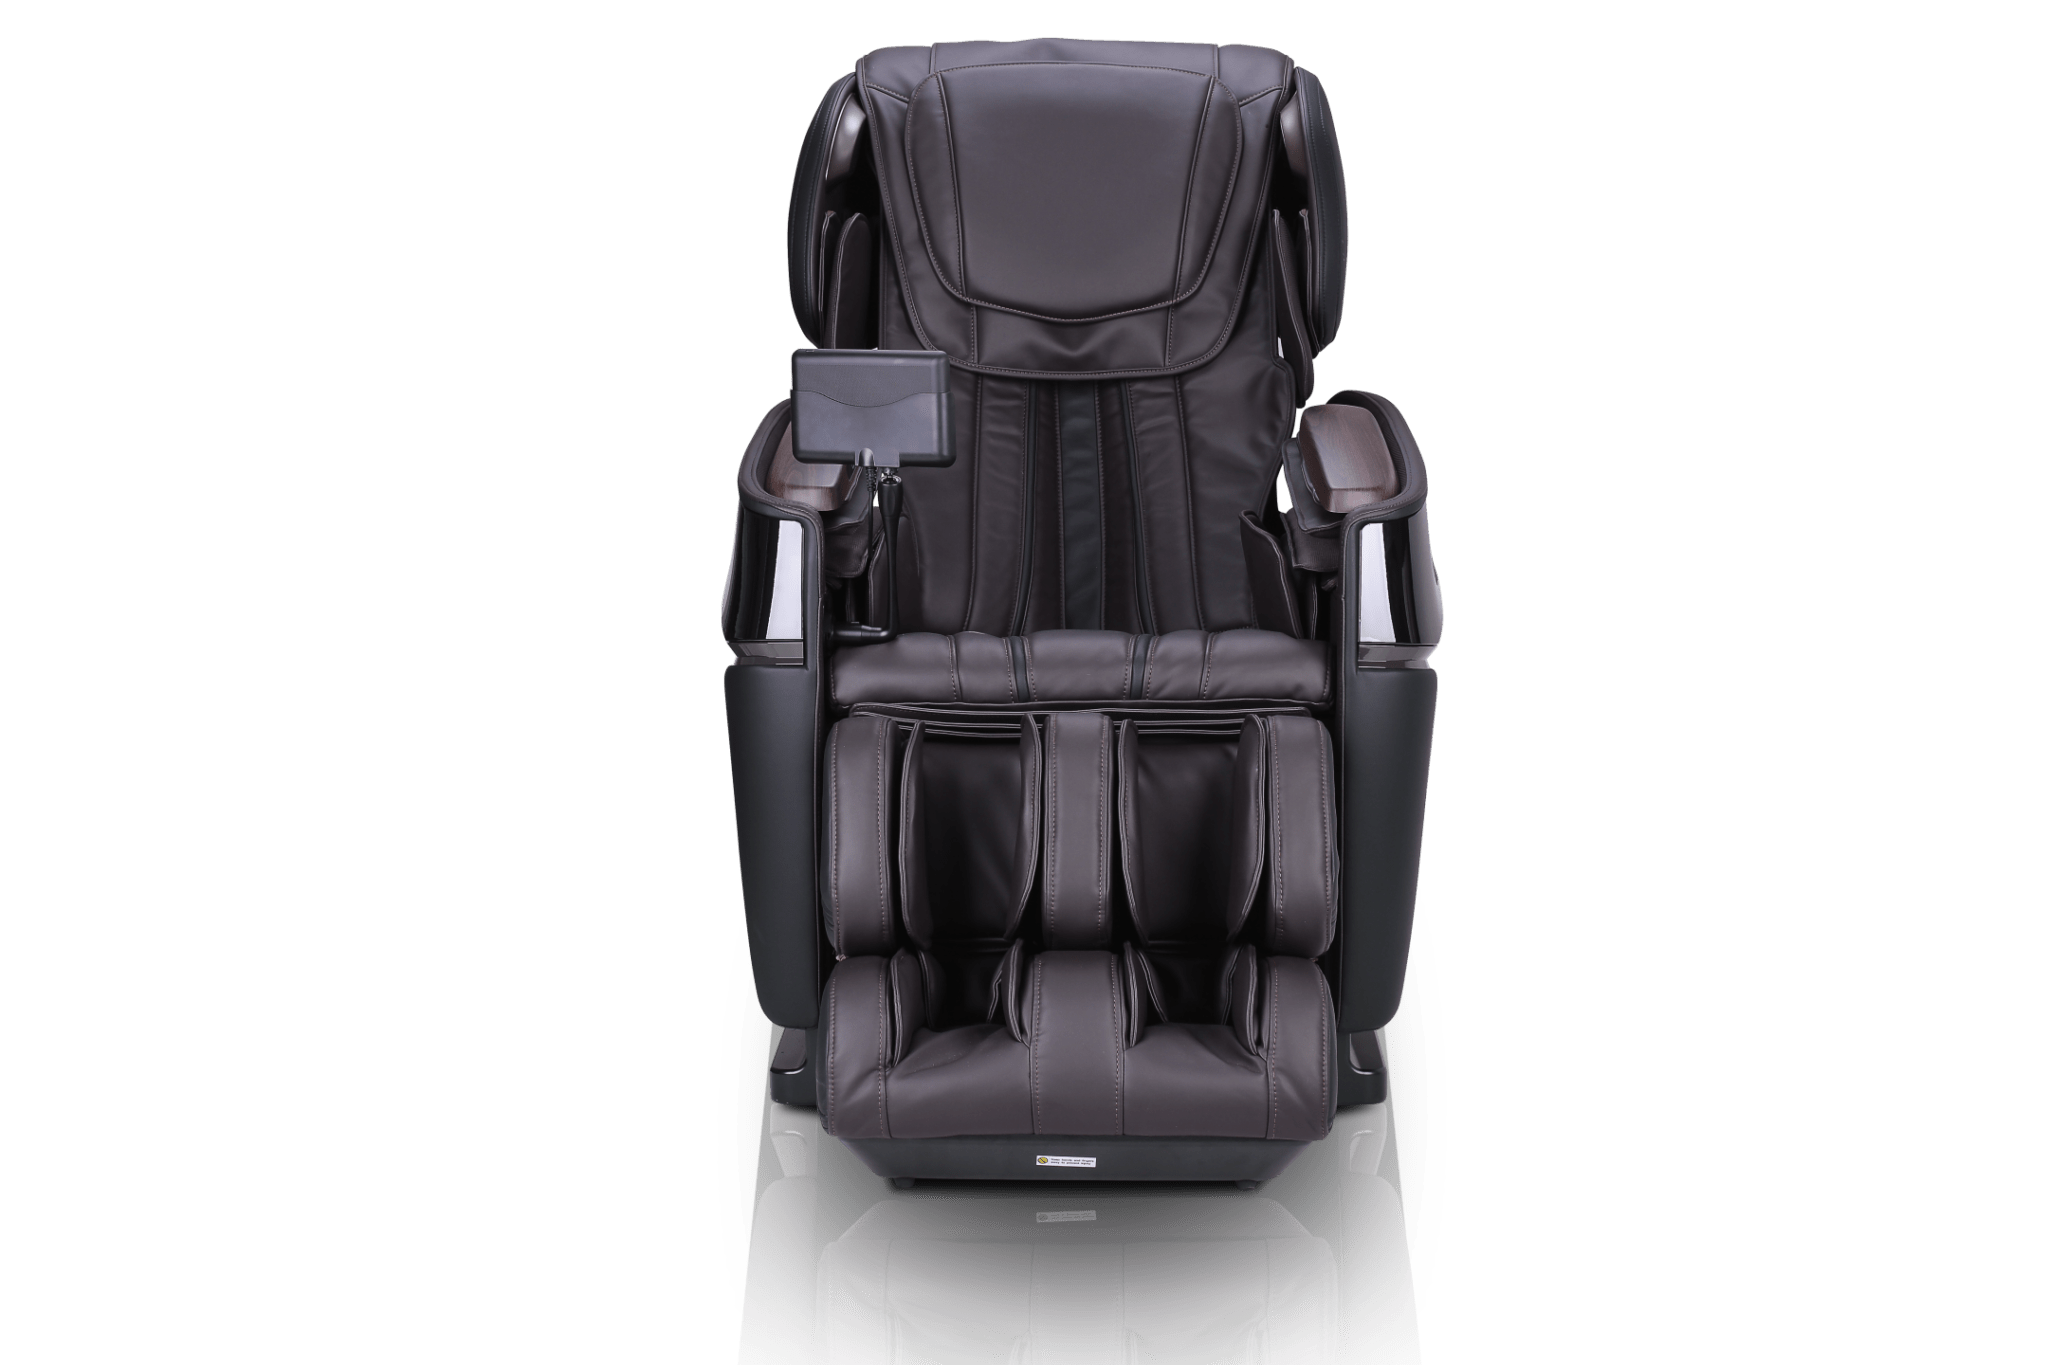 Cozzia Cz 681 Zen Pro 3d Massage Chair Mattress Clinic